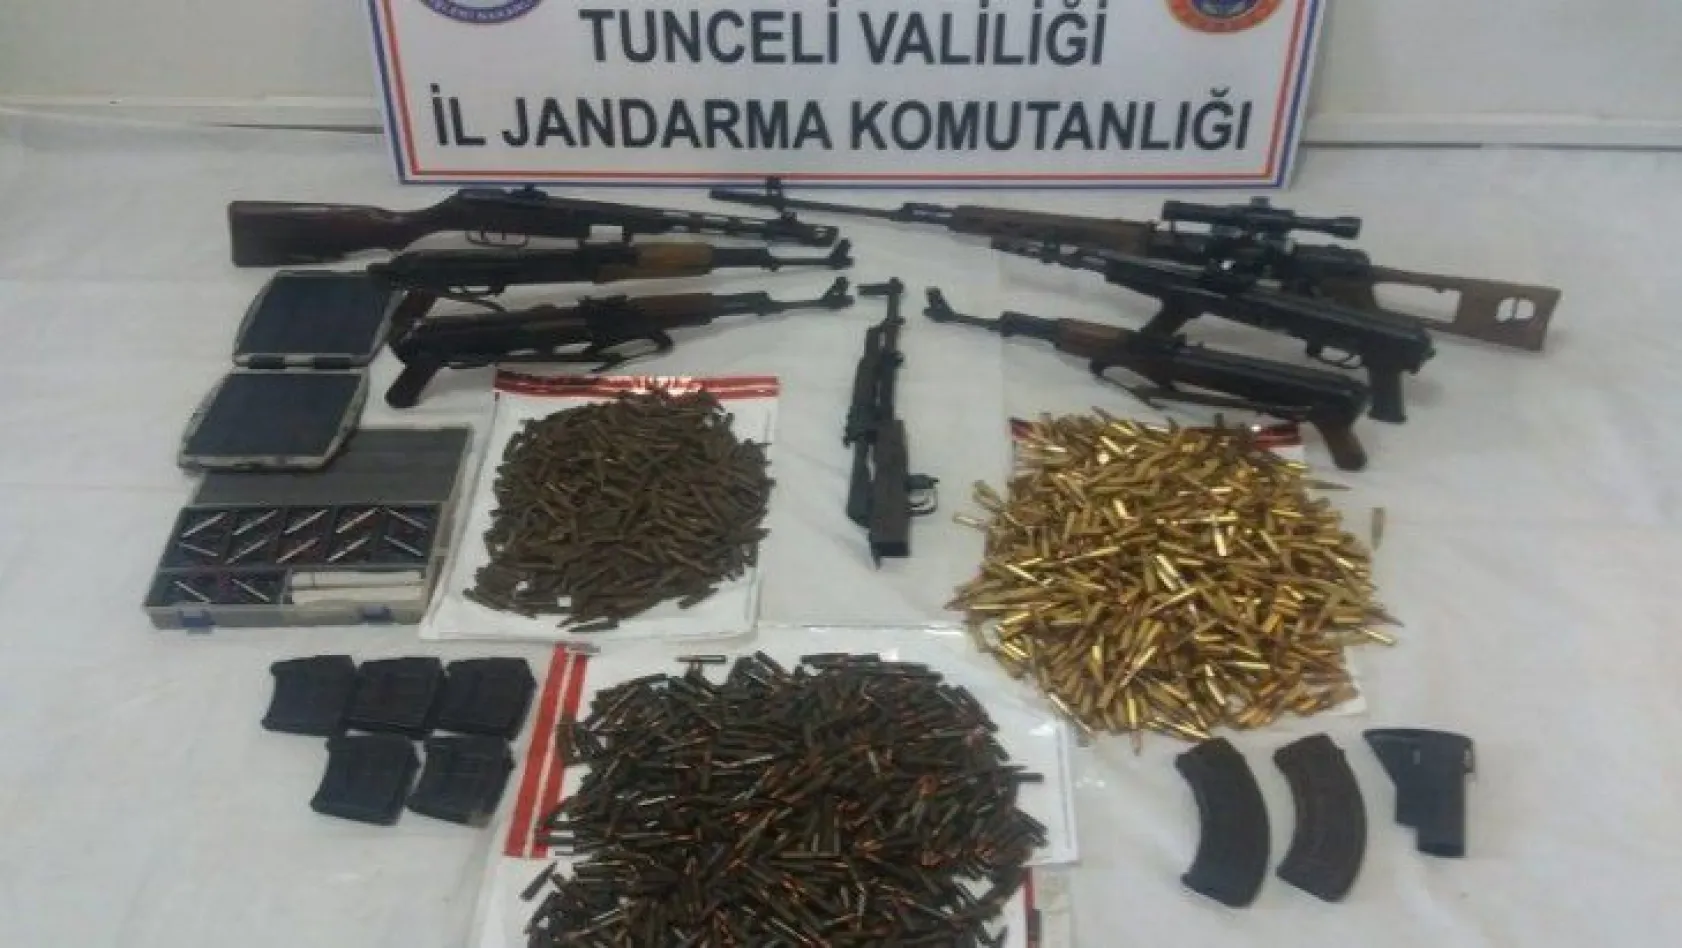 Tunceli'de teröristlerin silah ve cephaneleri ele geçirildi